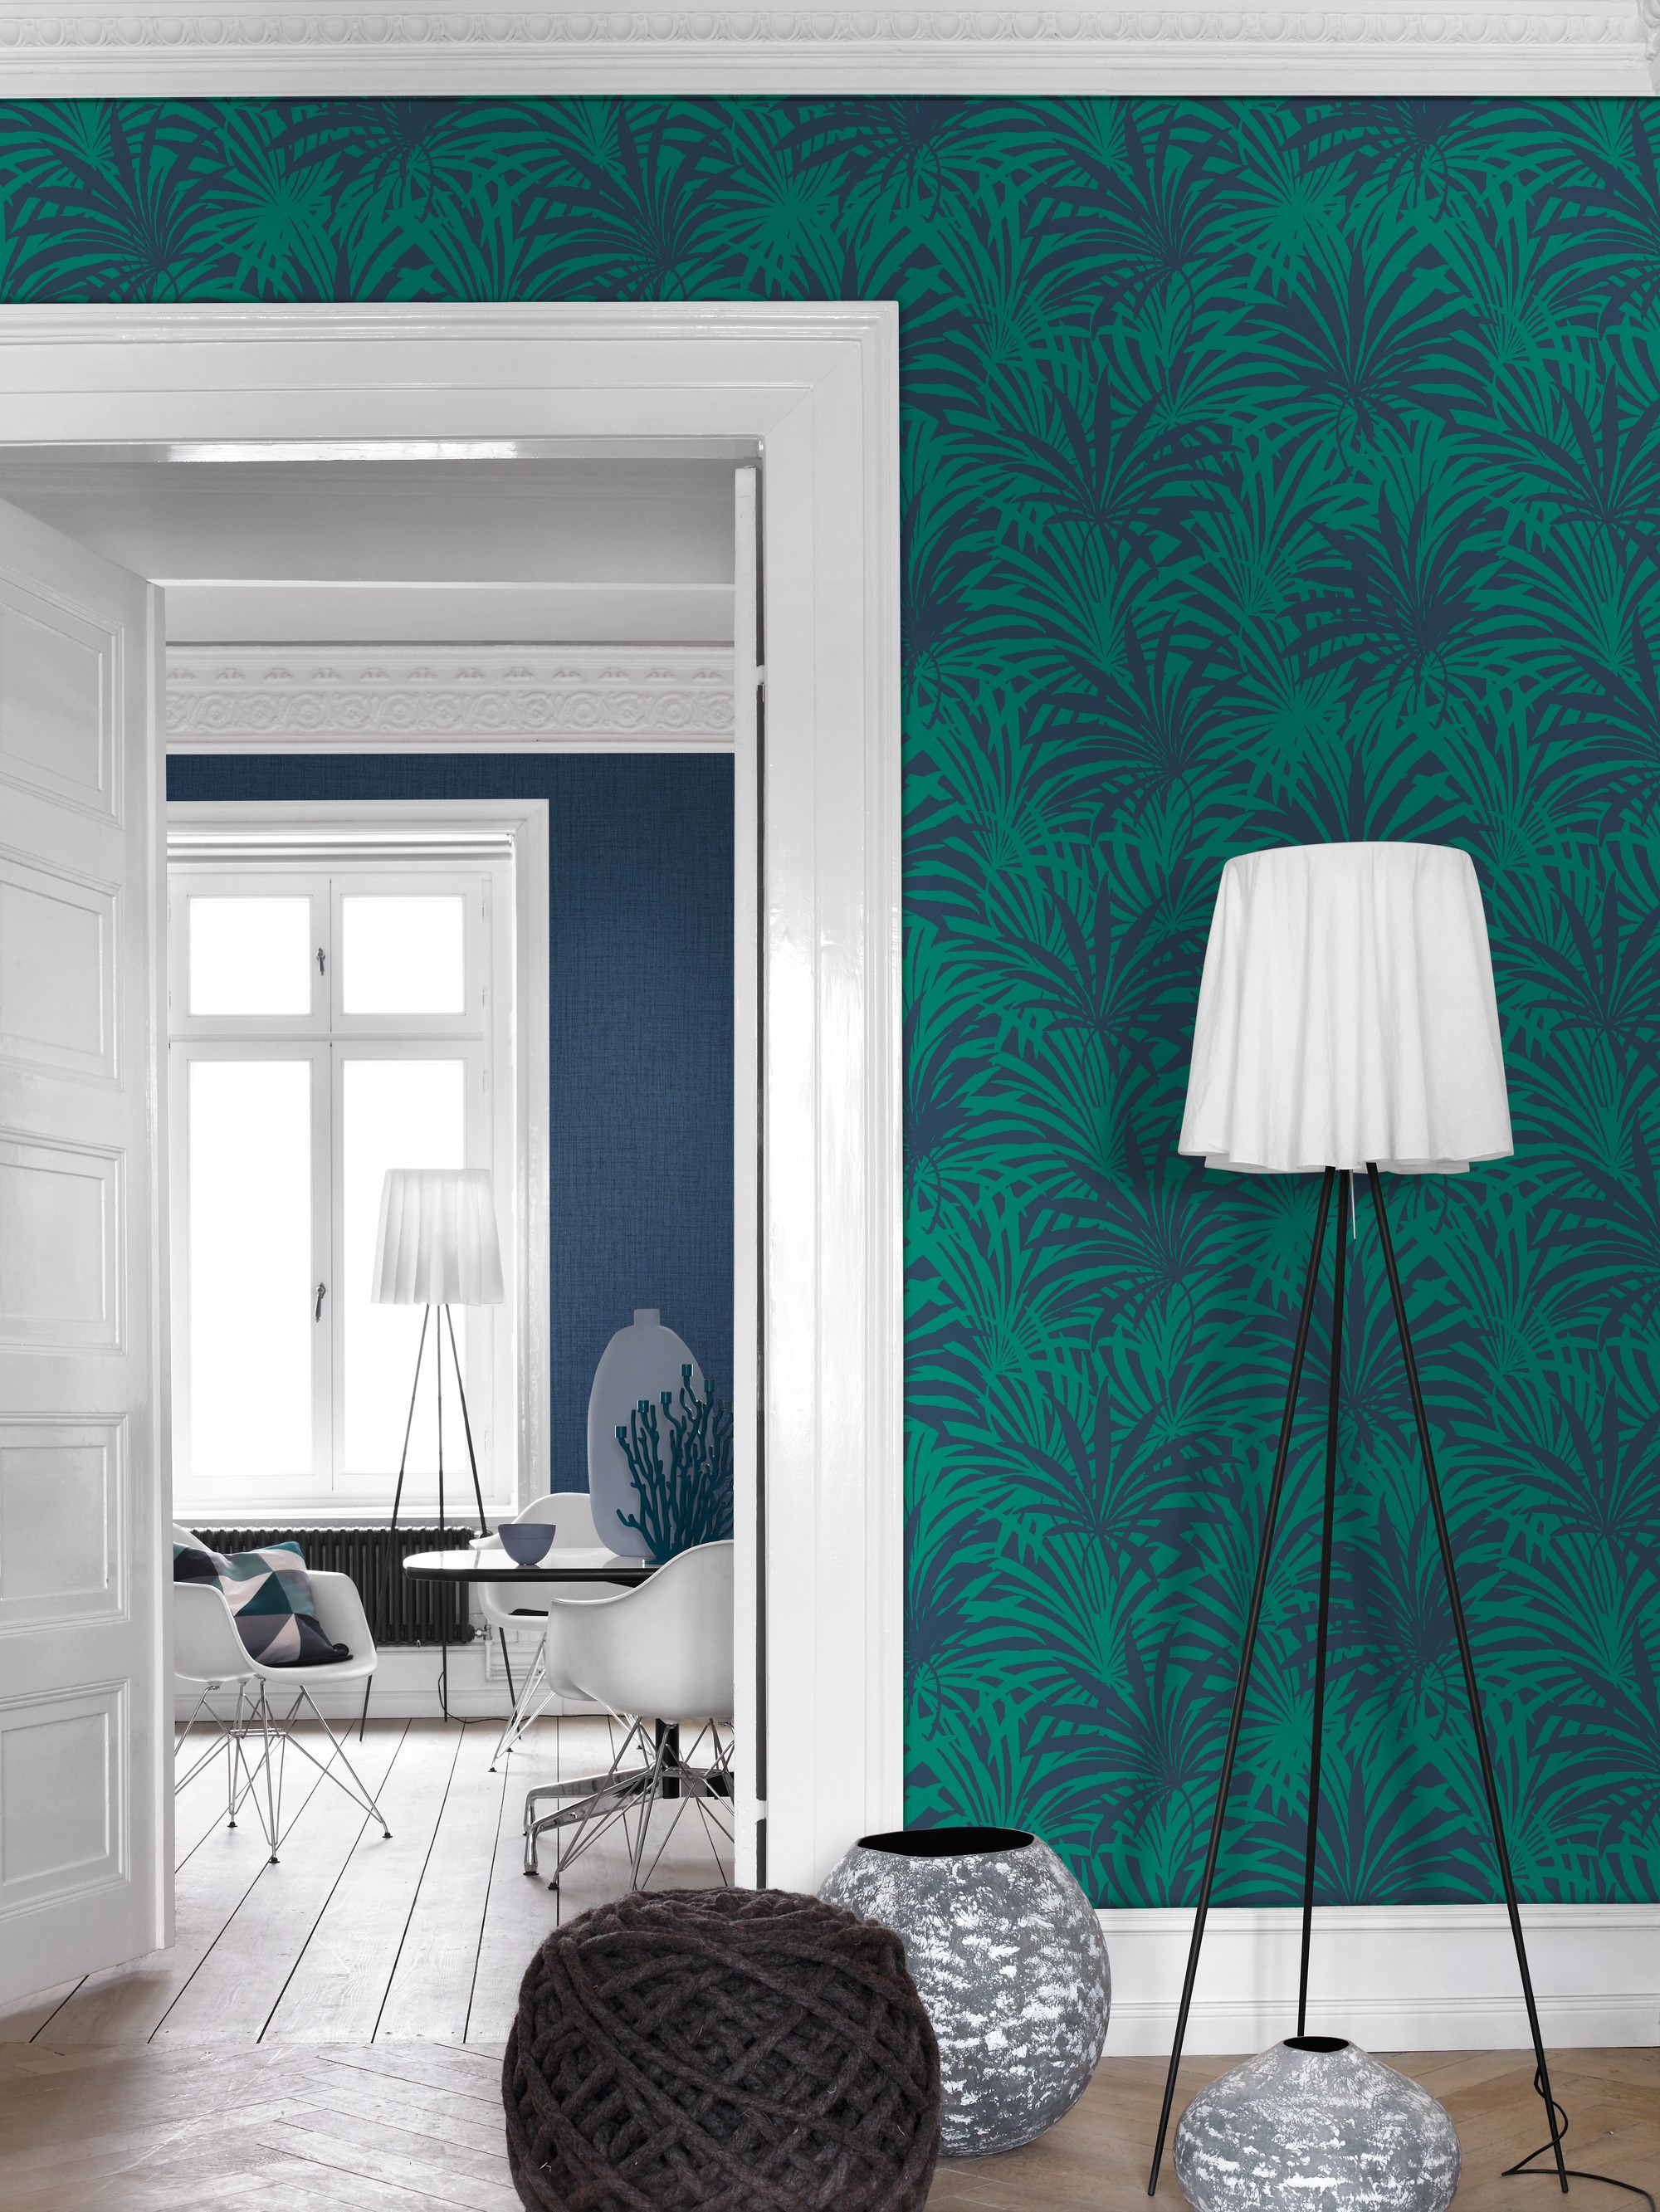 Wohnzimmer mit grüner Rasch-Vliestapete aus der Kollektion "Vanity Fair II"